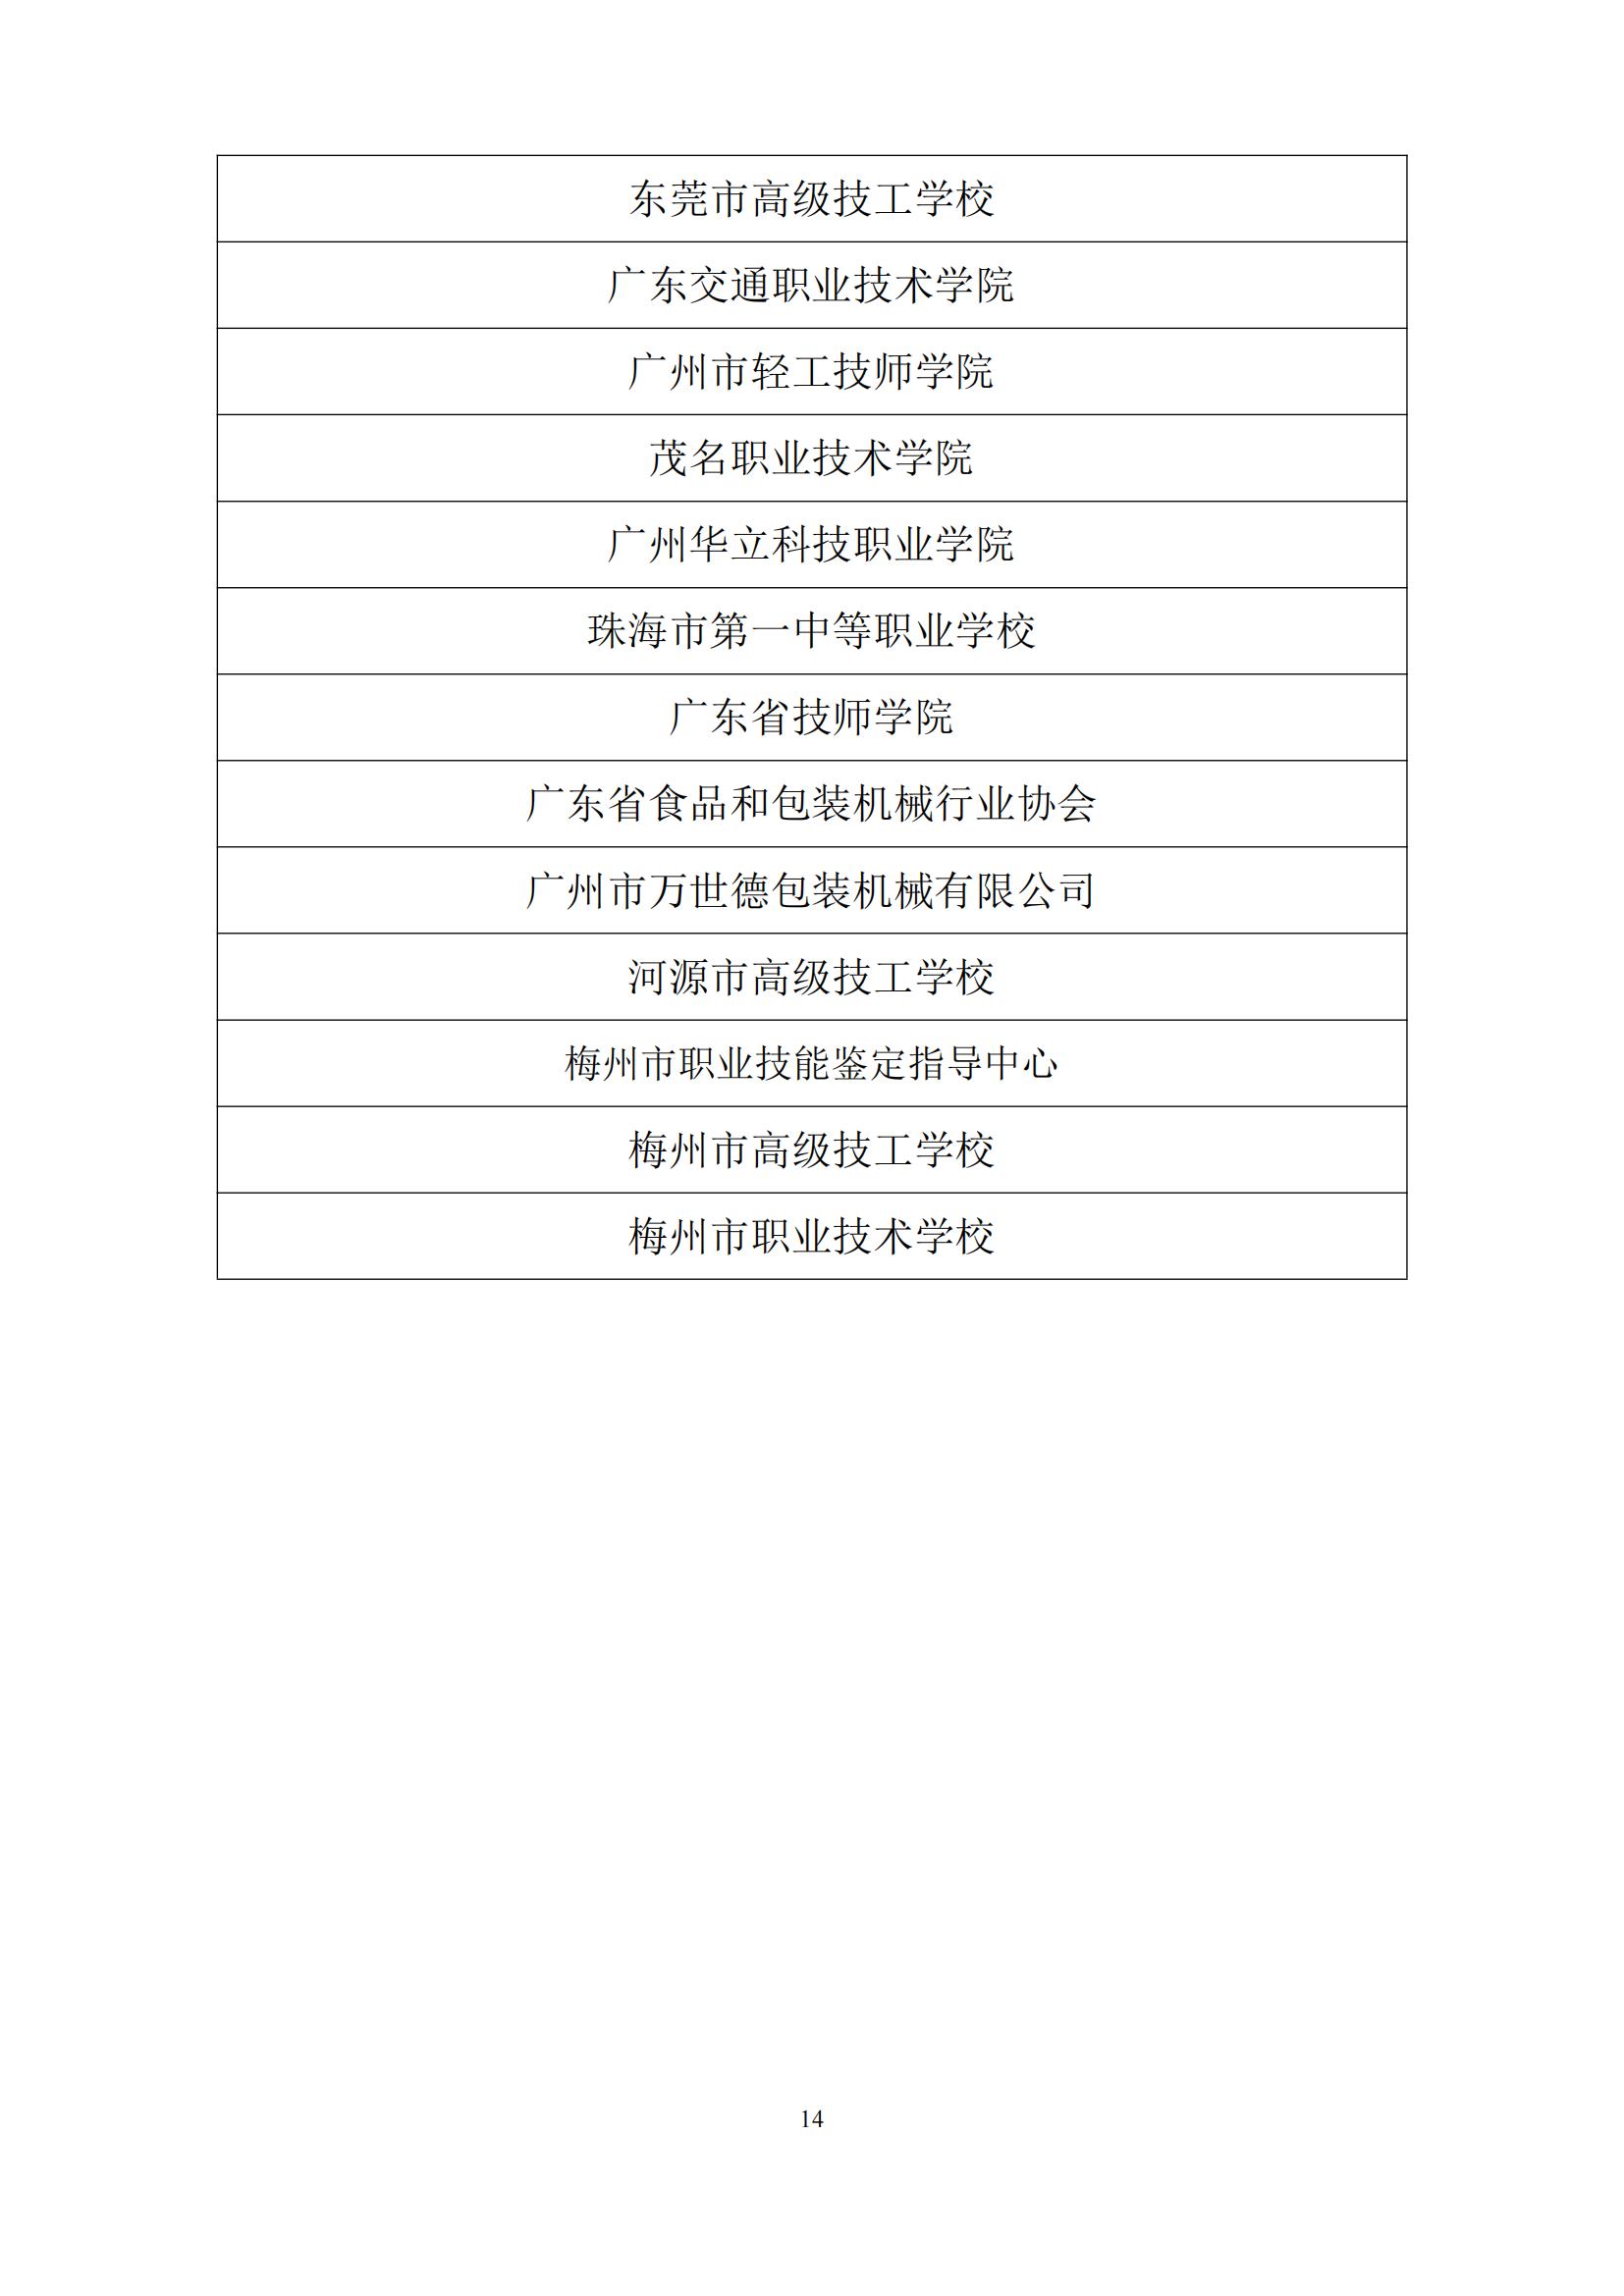 2011 年广东省可编程序系统控制设计师职业技能竞赛_13.jpg